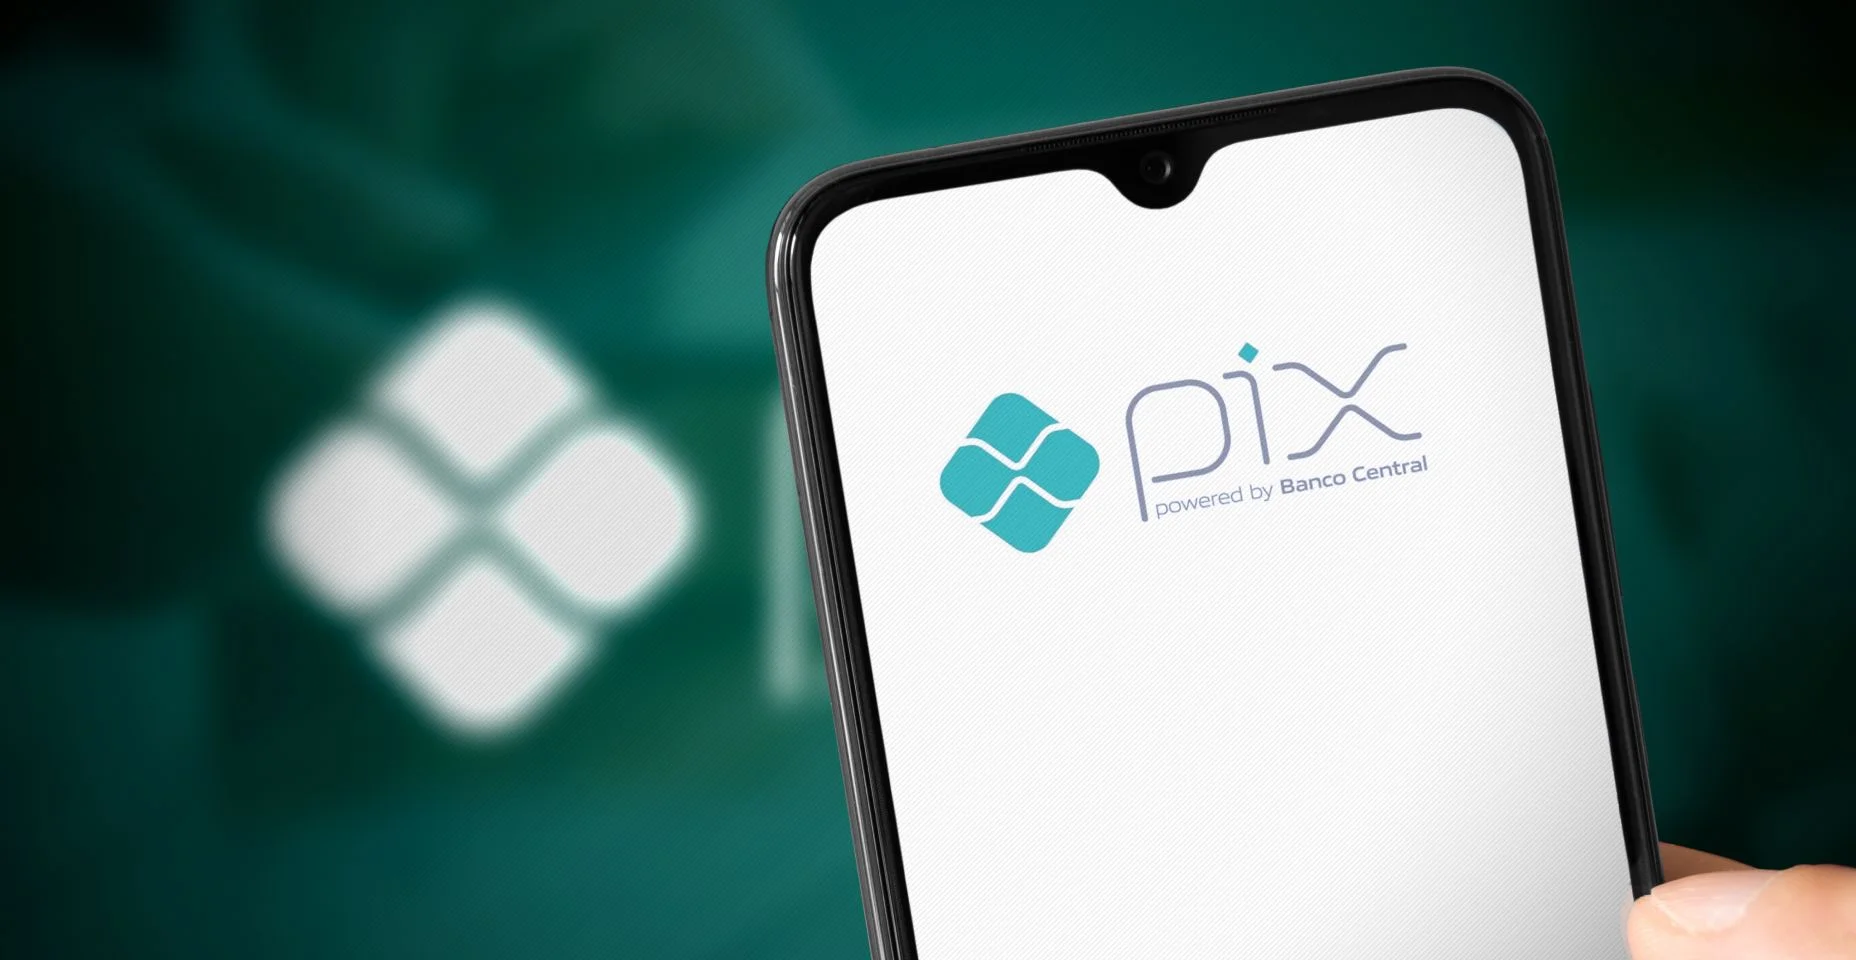 Logotipo do aplicativo Pix na tela do smartphone.